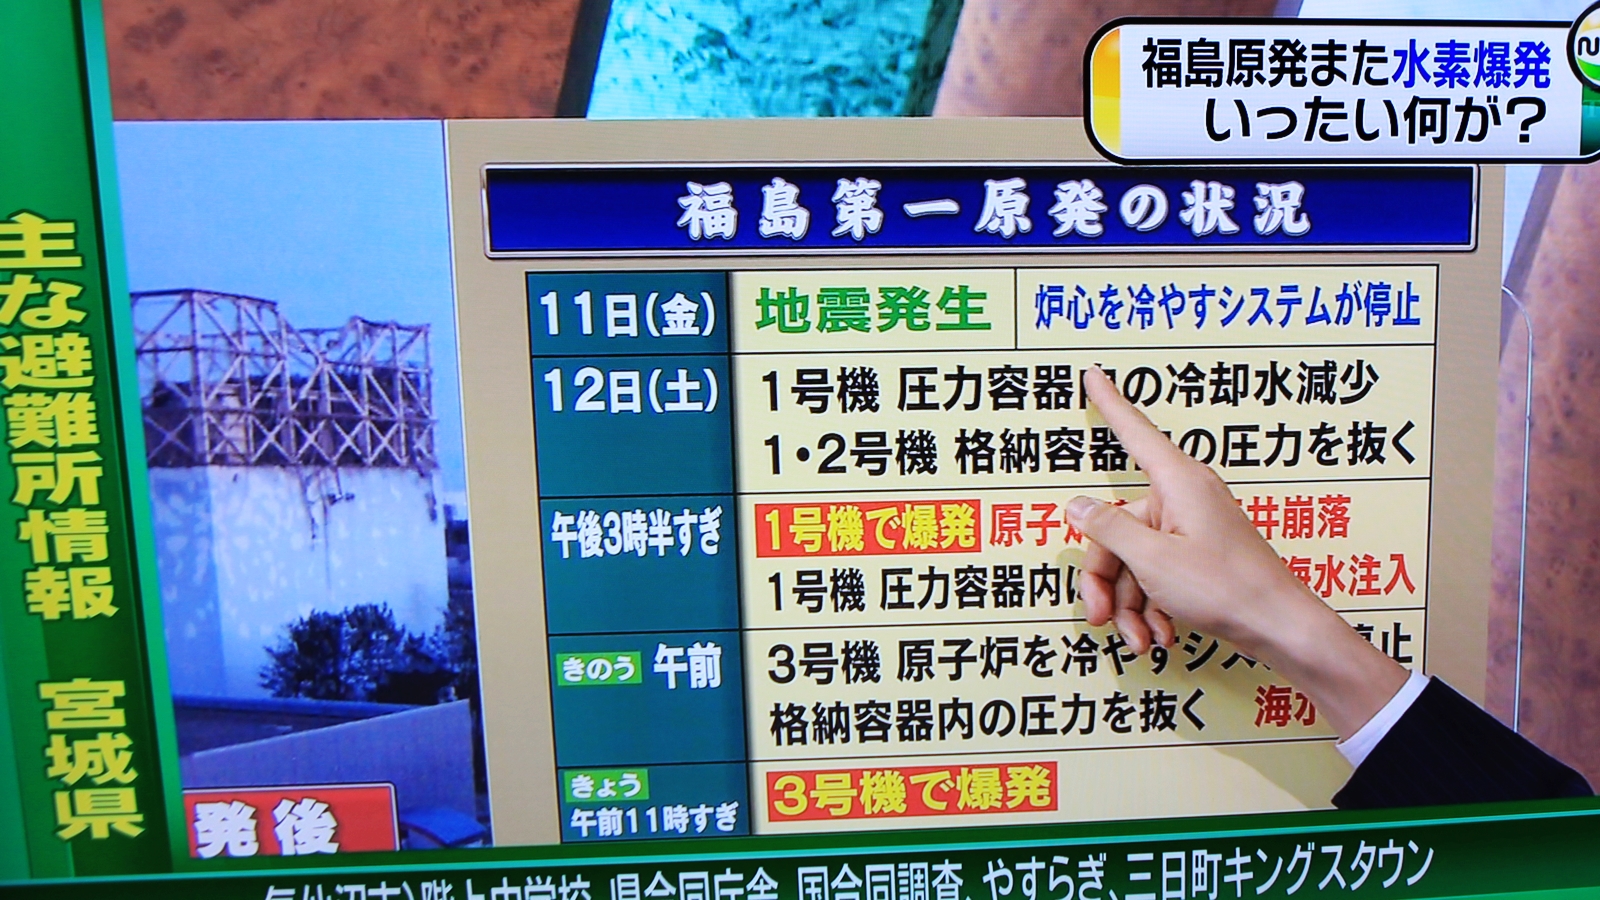 2011-03-earthquake-news-IMG_5492.jpg